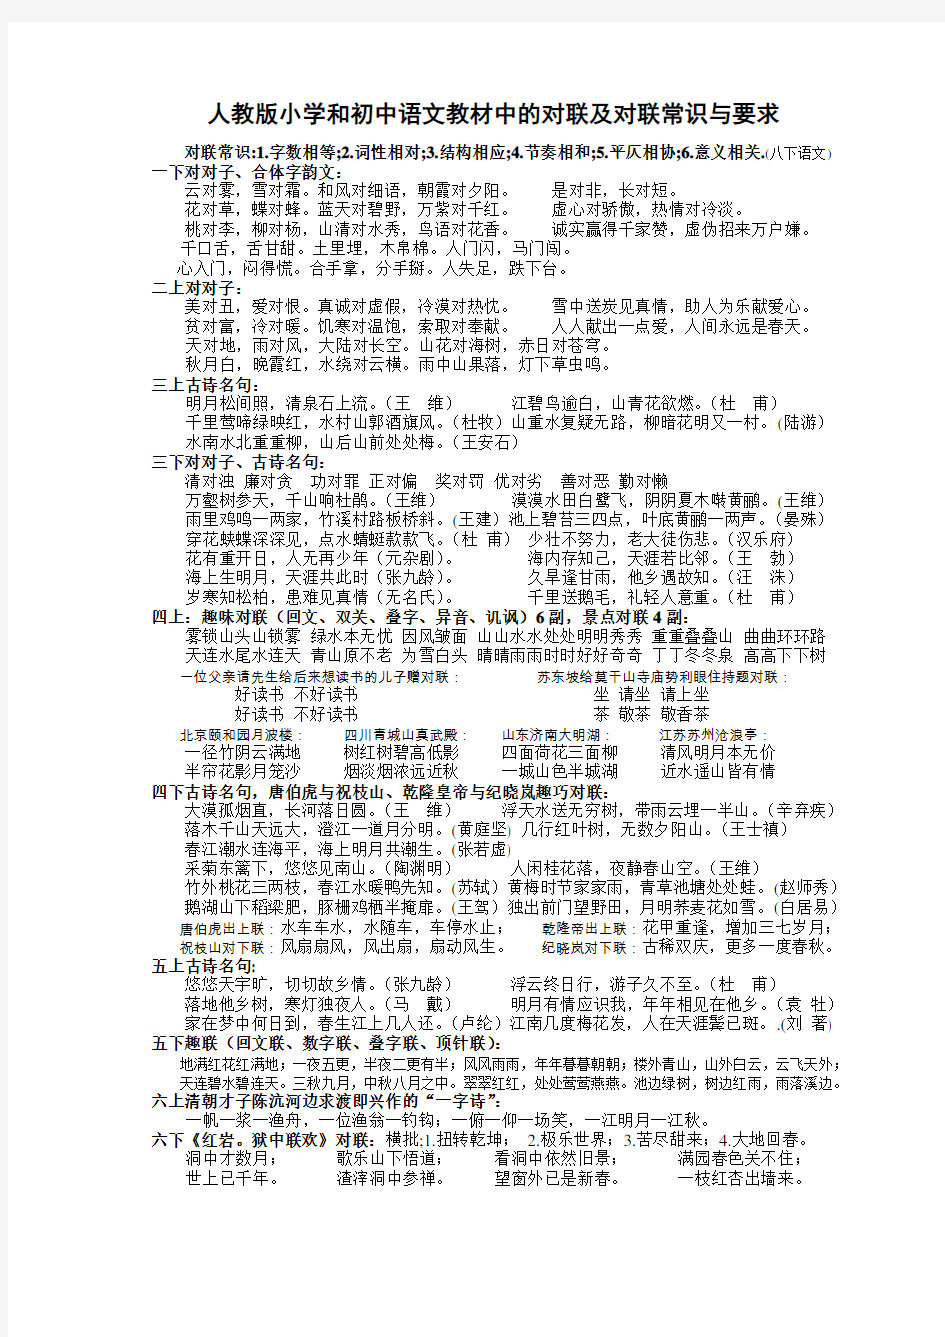 (完整版)人教版小学和初中语文教材中的对联及对联常识与要求